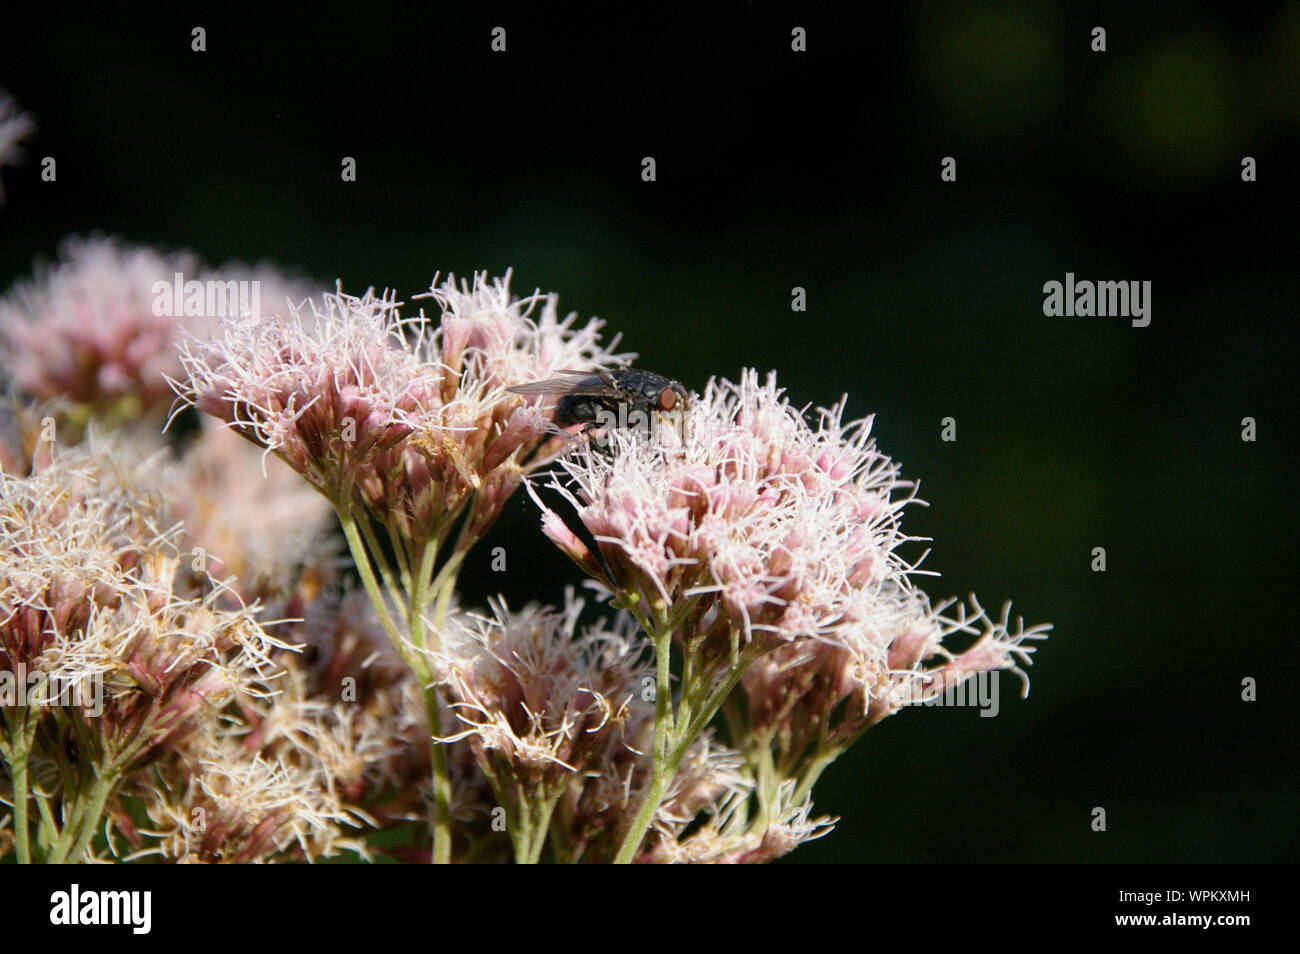 blowfly fly sitting on thoroughwort flowers blossoms/ Fliege sitzt auf Wasserdost Blüten Nahaufnahme Stock Photo